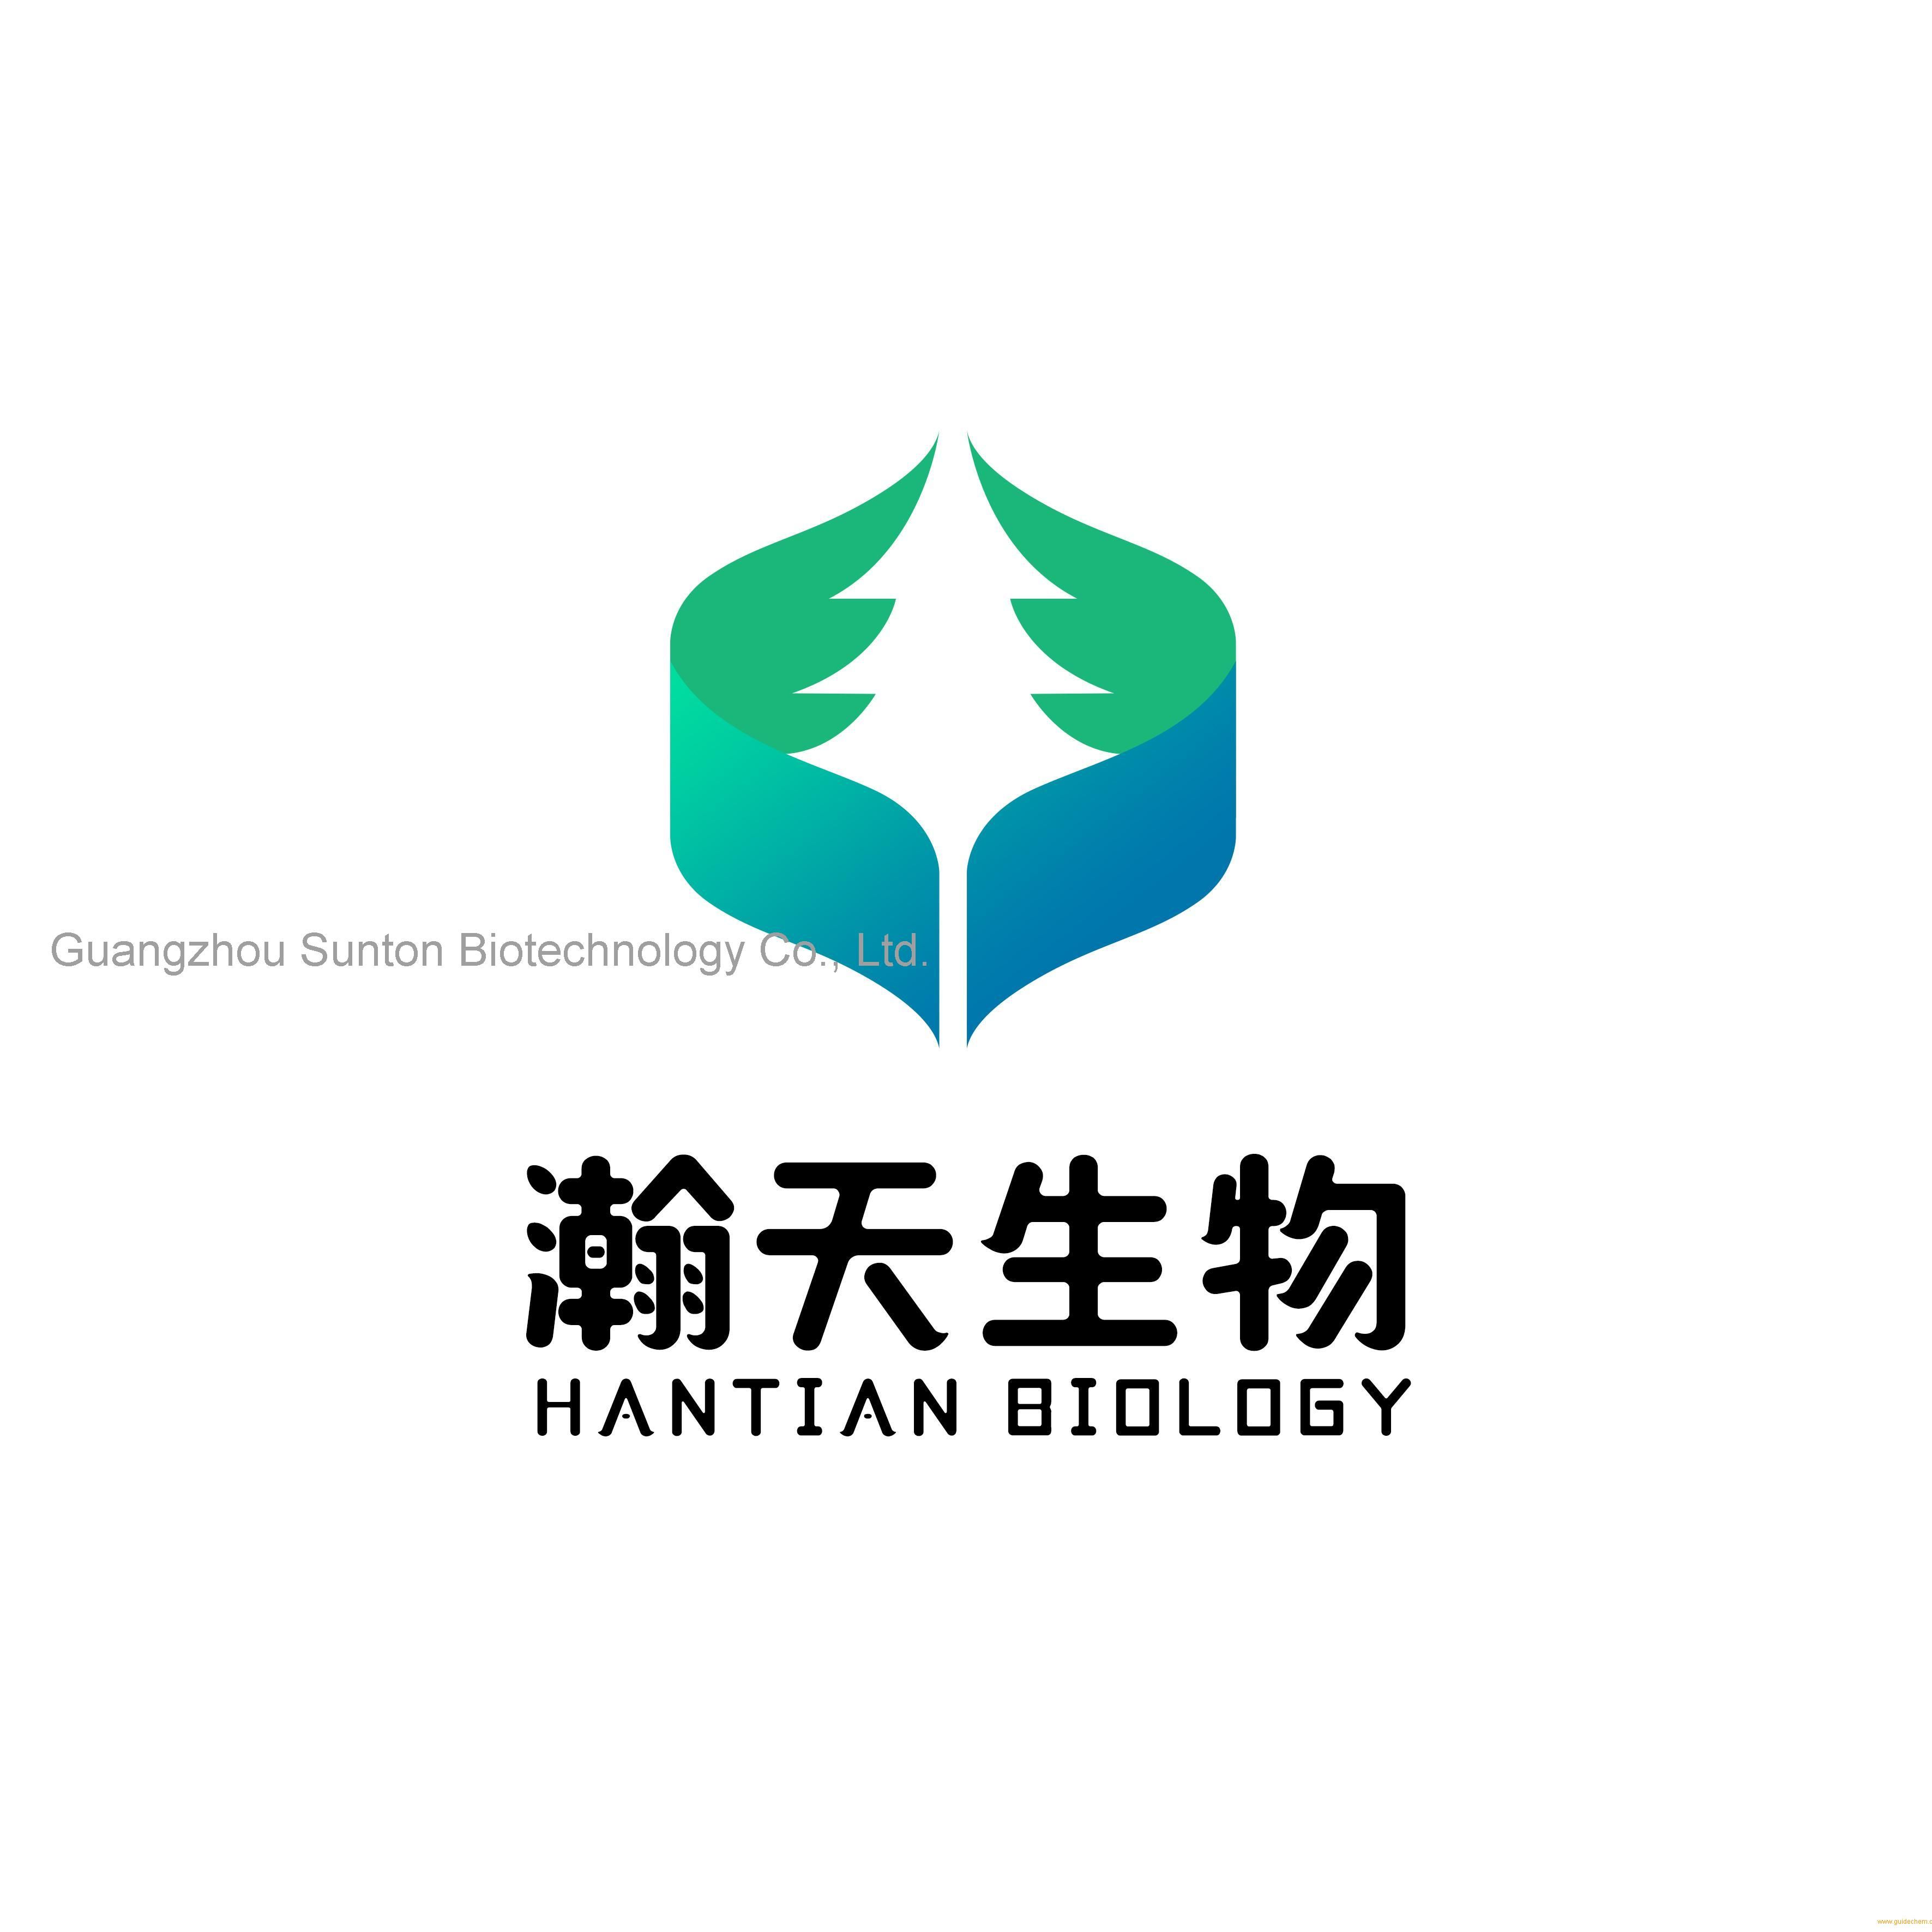 Guangzhou Sunton Biotechnology Co., Ltd.